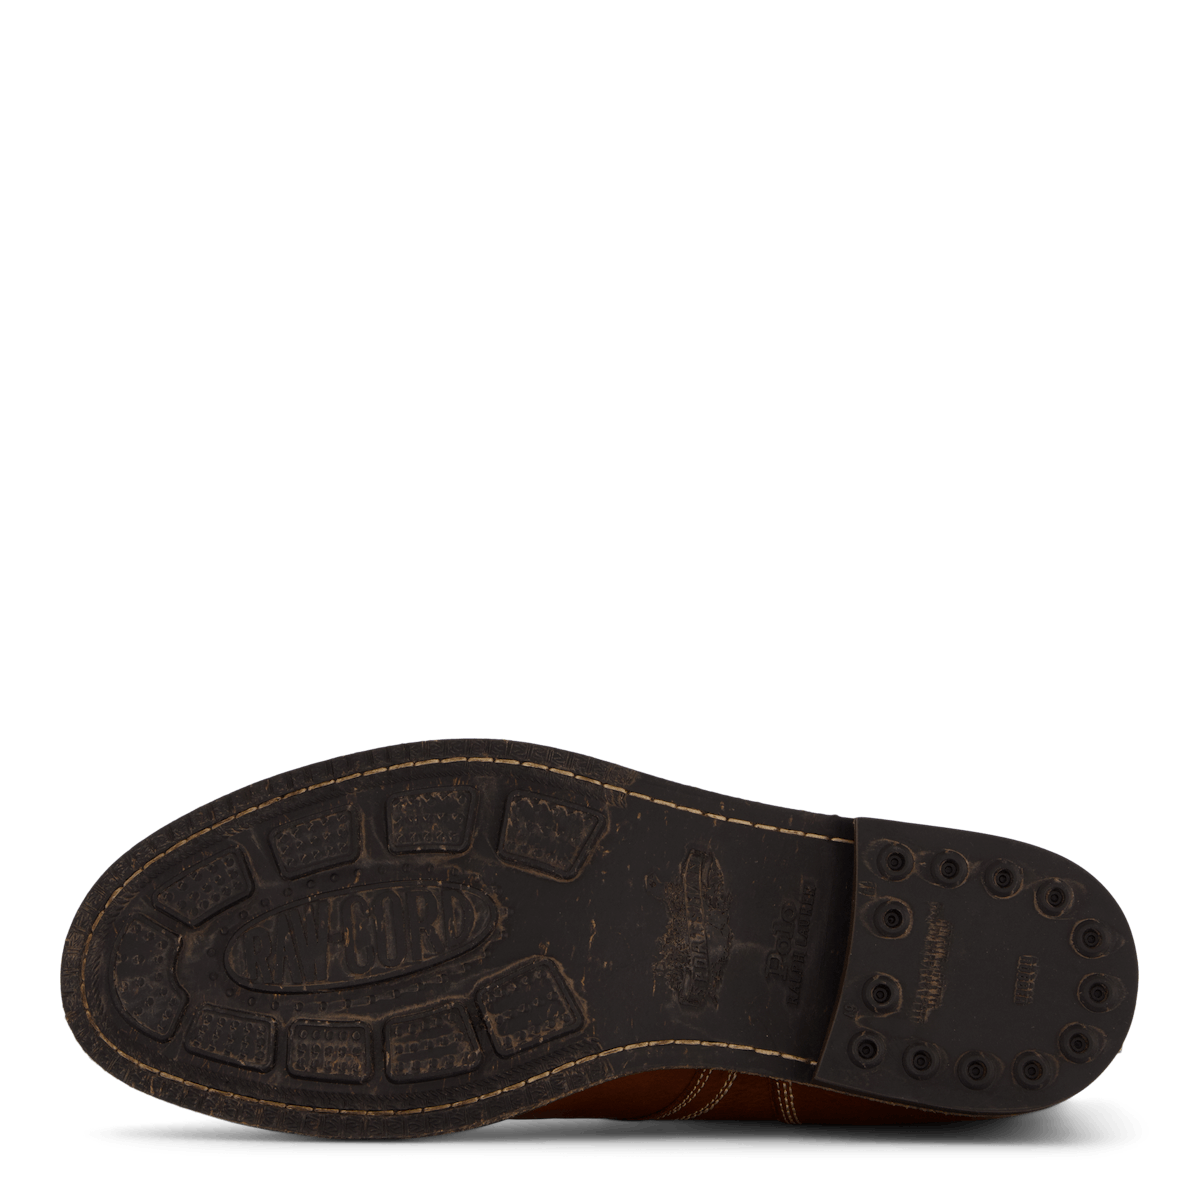 Tumbled Leather Boot Peanut